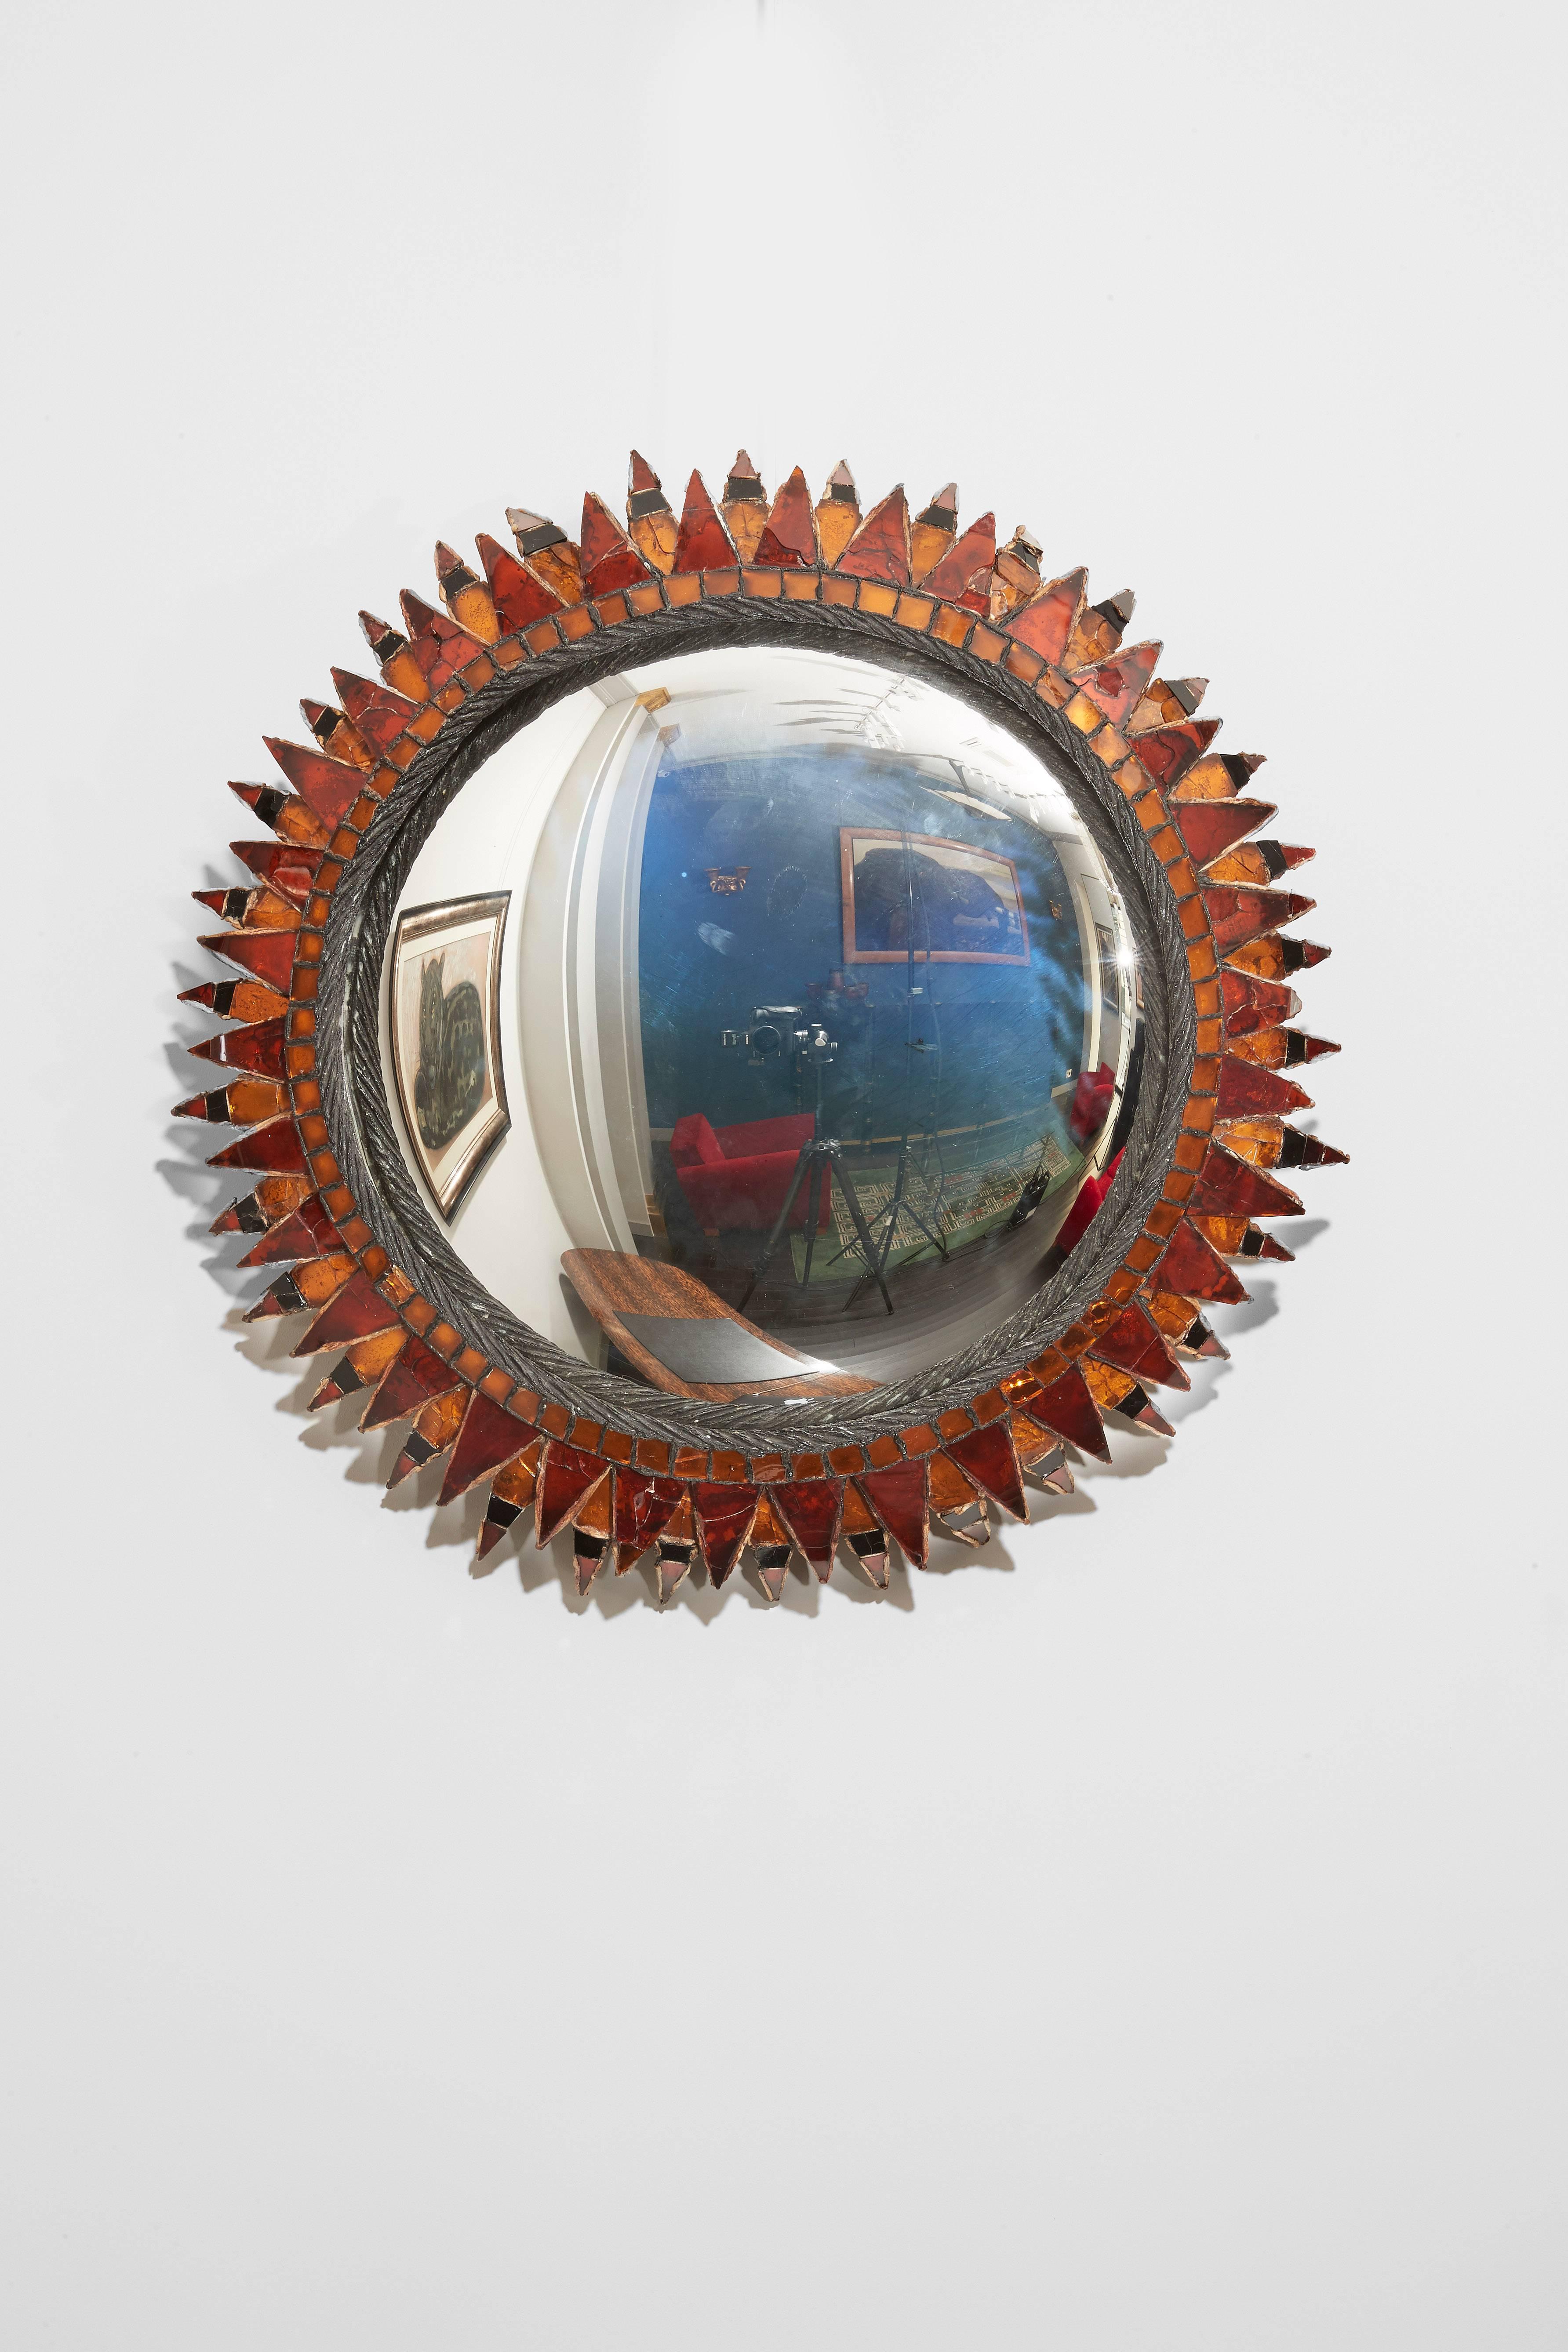 Ein runder, konvexer Spiegel aus Talosel und ein orangefarbener, schwarzer und roter Spiegel.